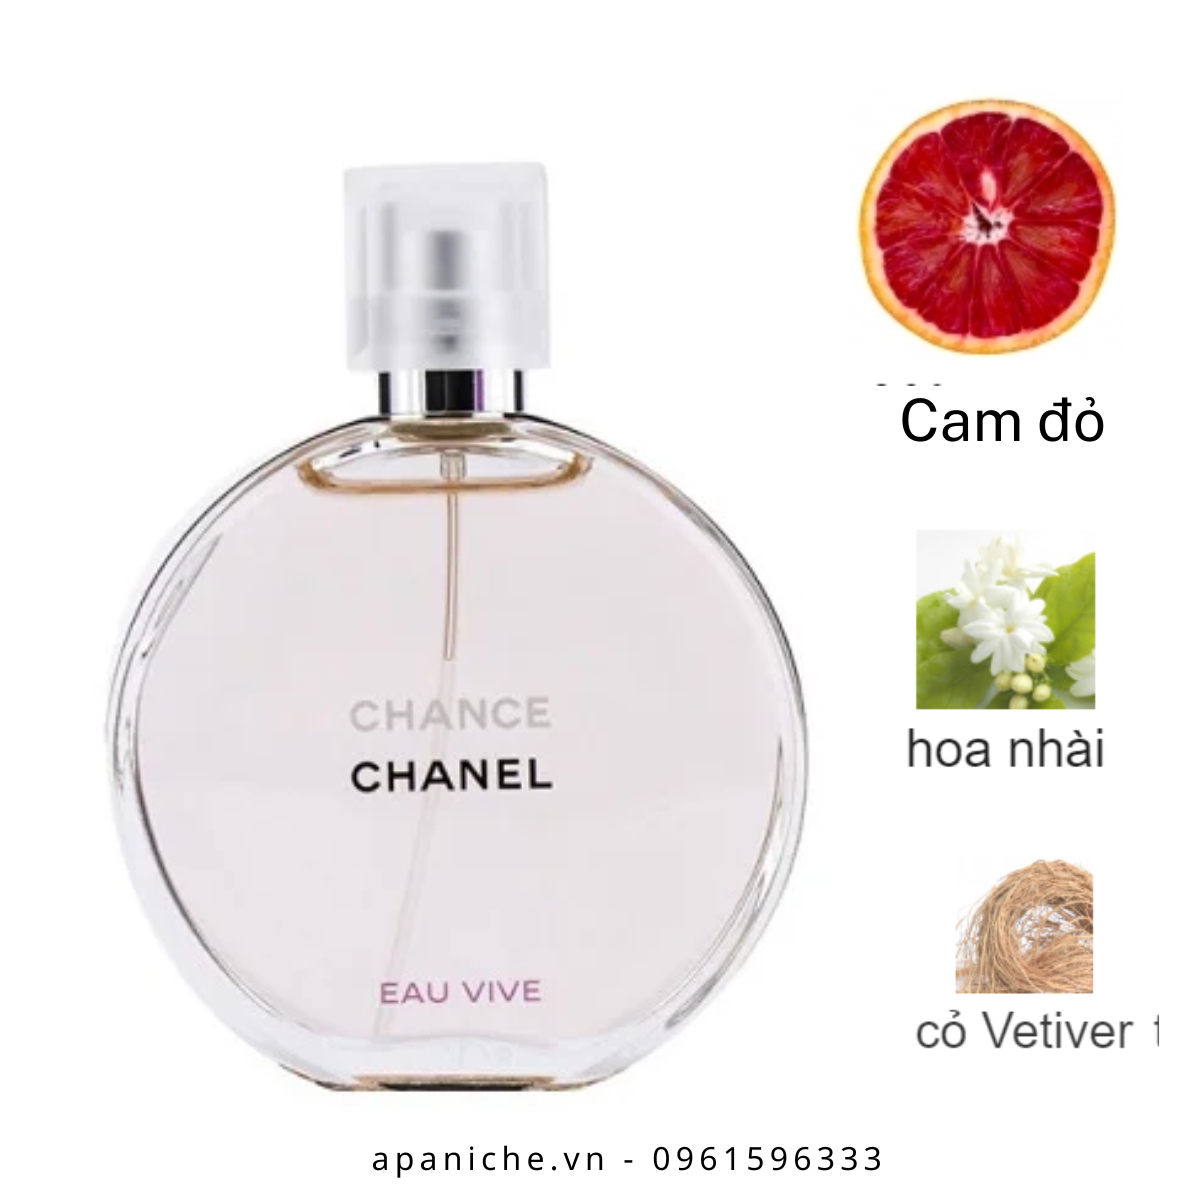 Chanel Chance Eau Vive Perfume Cabello 35ml  PromoFarma